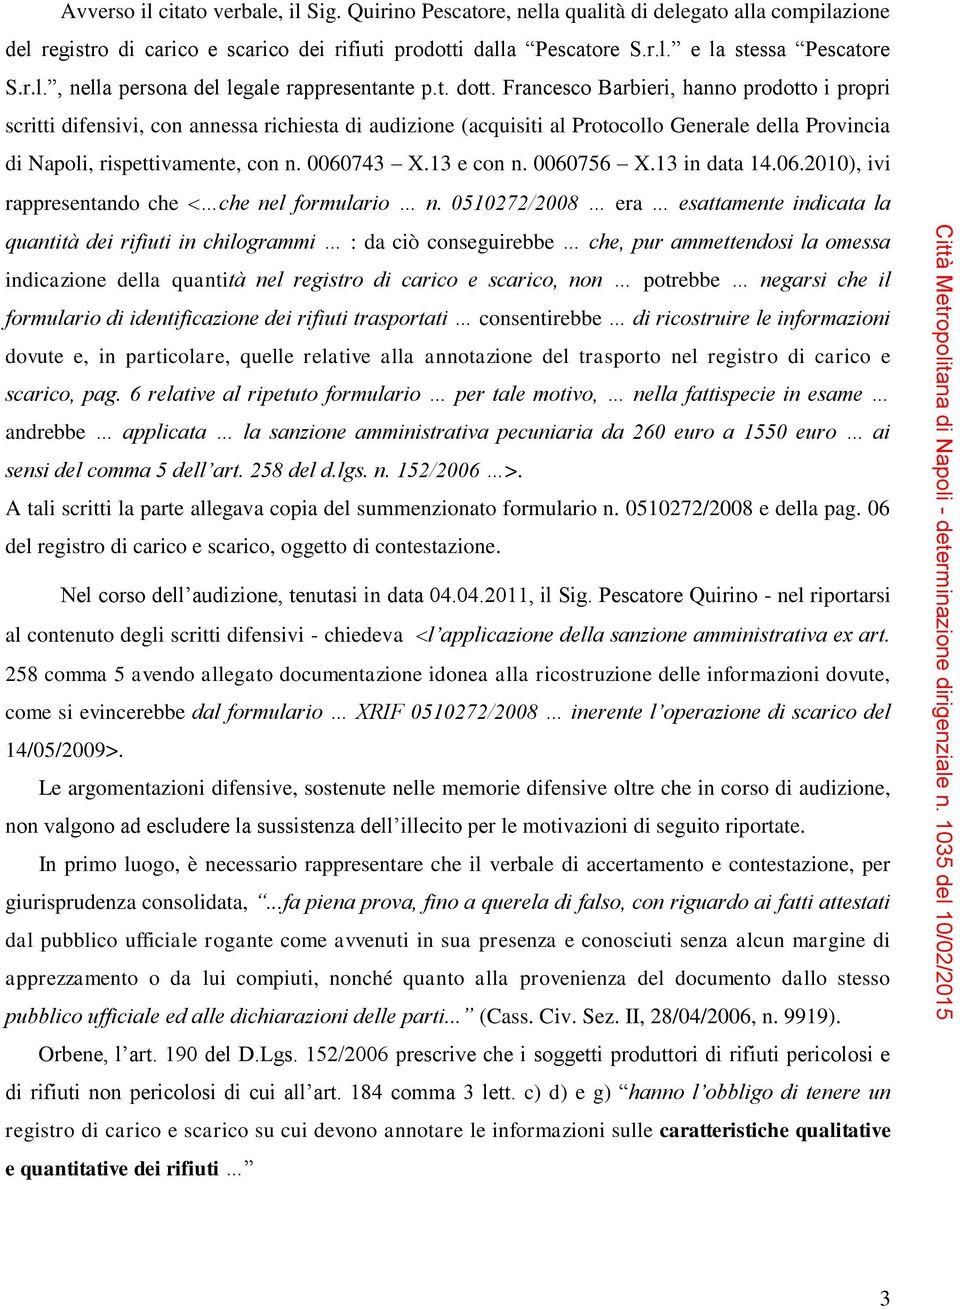 Francesco Barbieri, hanno prodotto i propri scritti difensivi, con annessa richiesta di audizione (acquisiti al Protocollo Generale della Provincia di Napoli, rispettivamente, con n. 0060743 X.